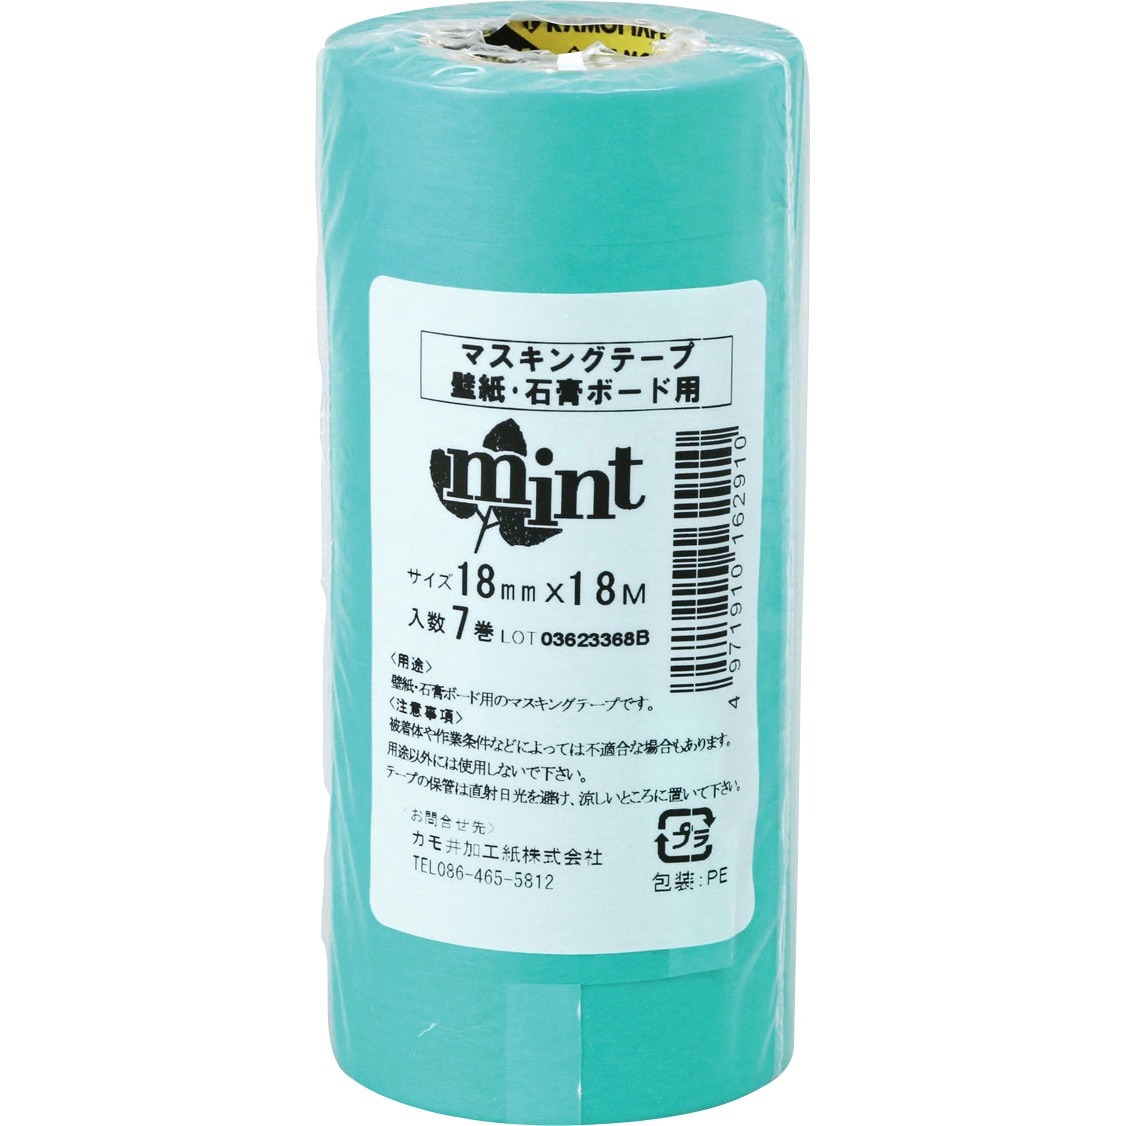 カモイ マスキングテープ SR-100 6mm巾×18m長 200巻 - 1